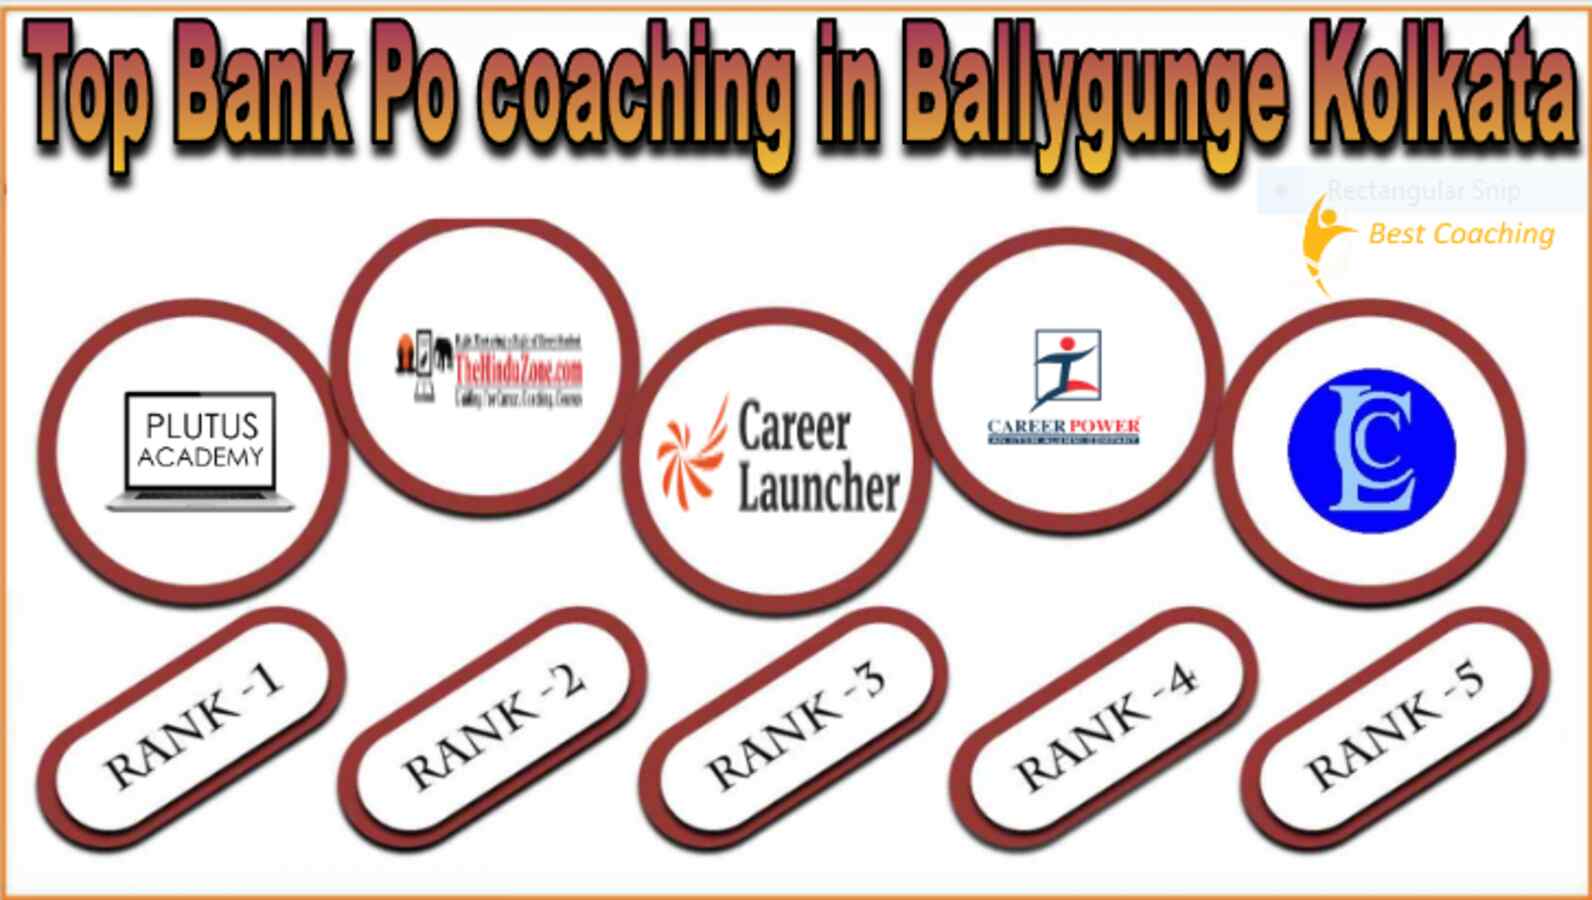 Top Bank Po coaching in Ballygunge Kolkata